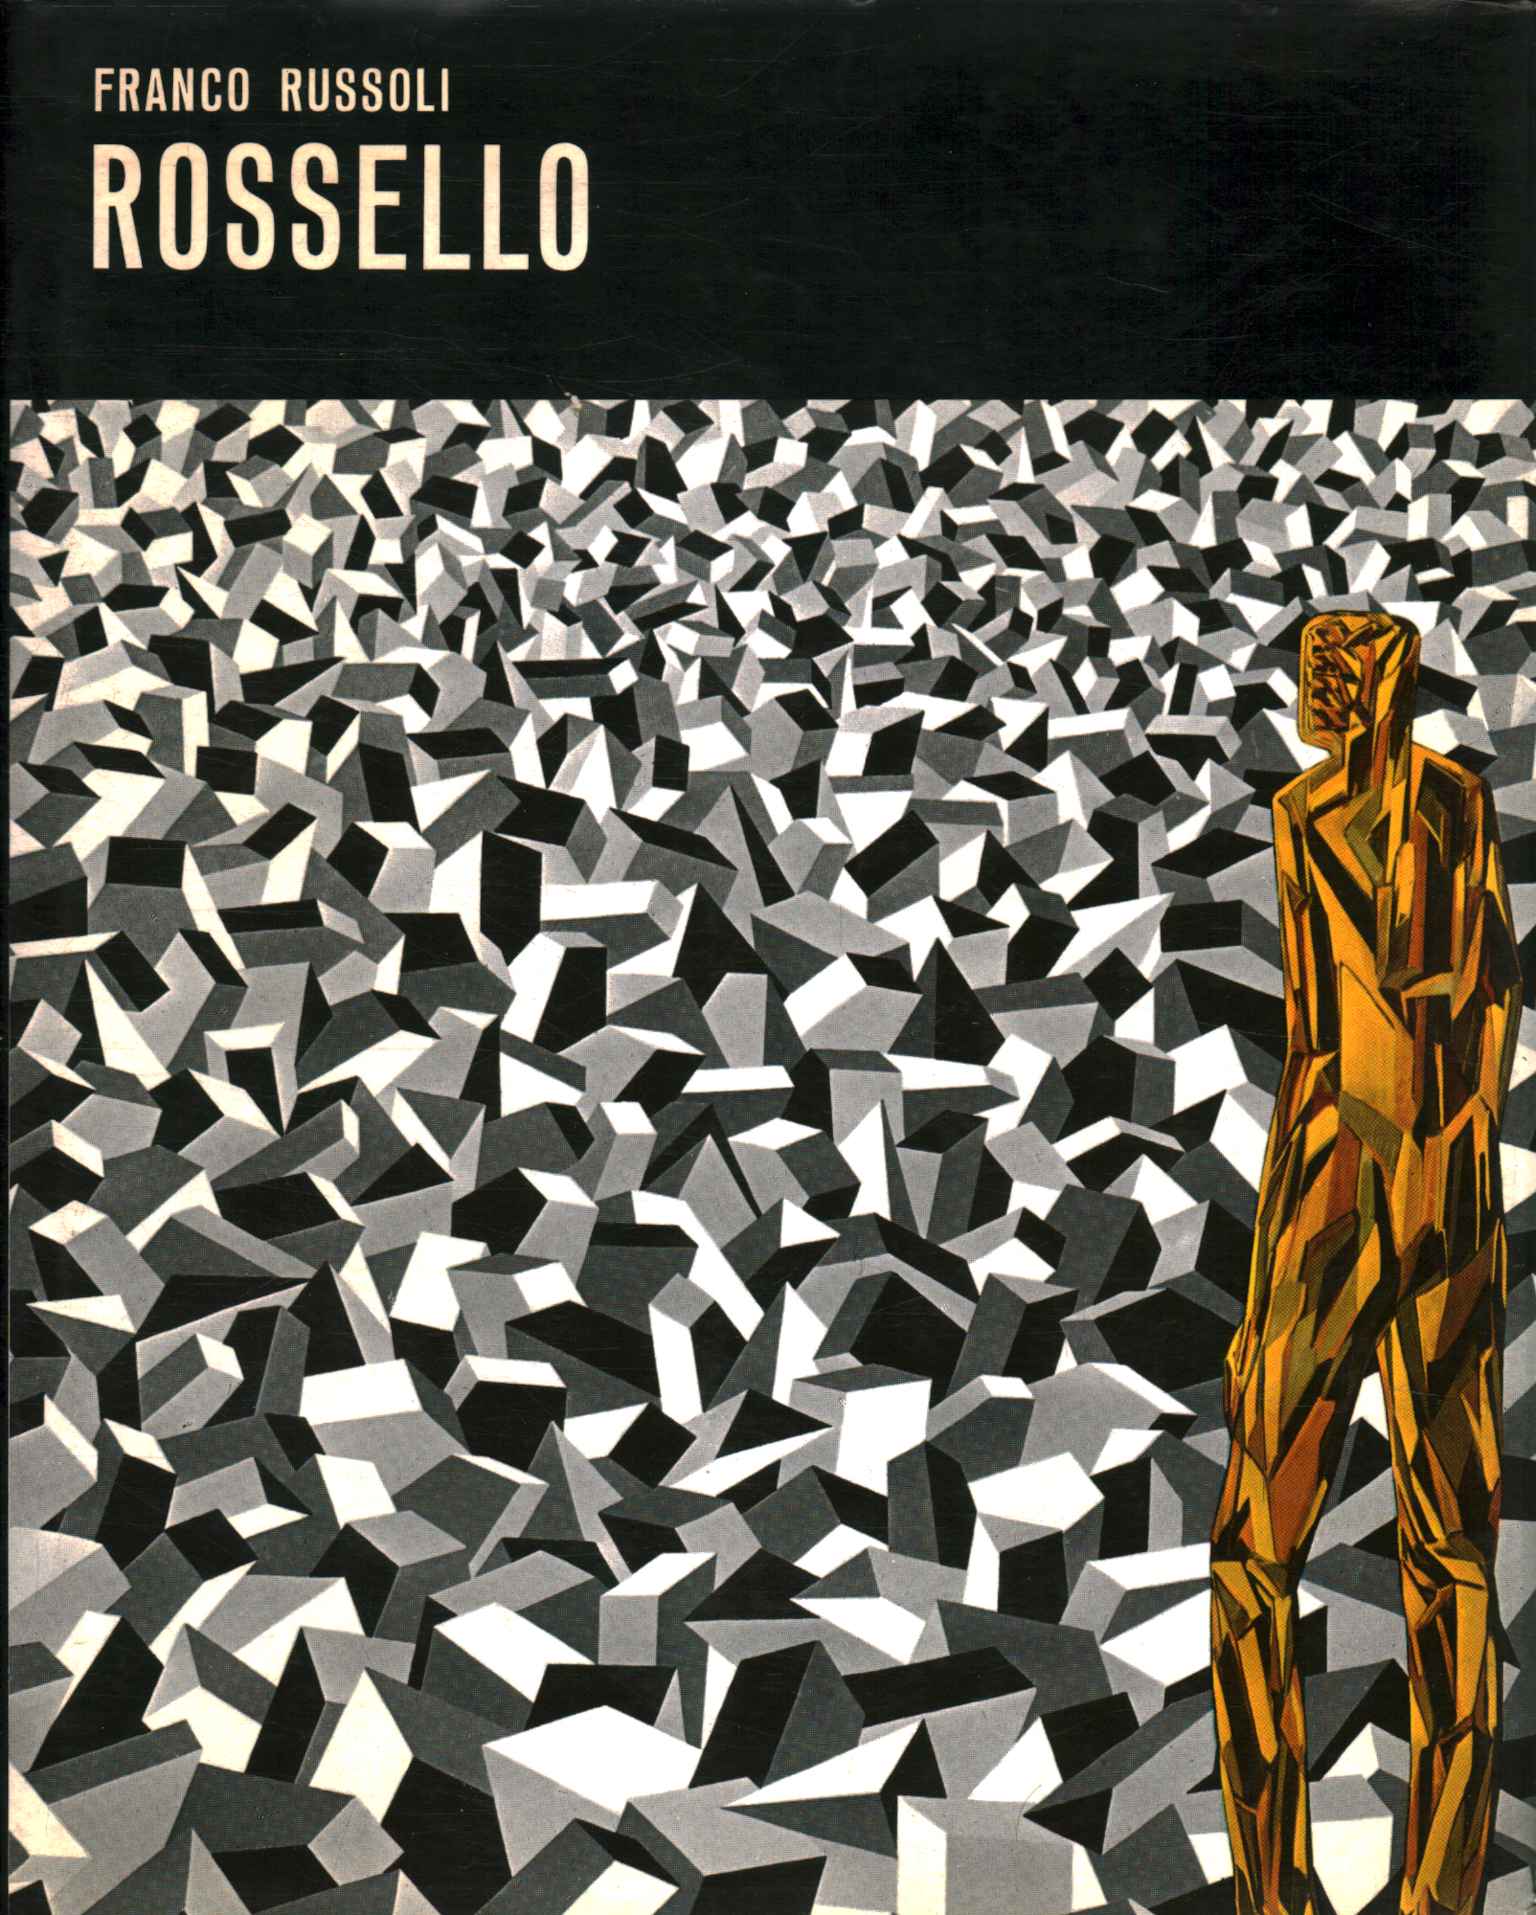 Books - Art - Contemporary, Franco Russoli Rossello